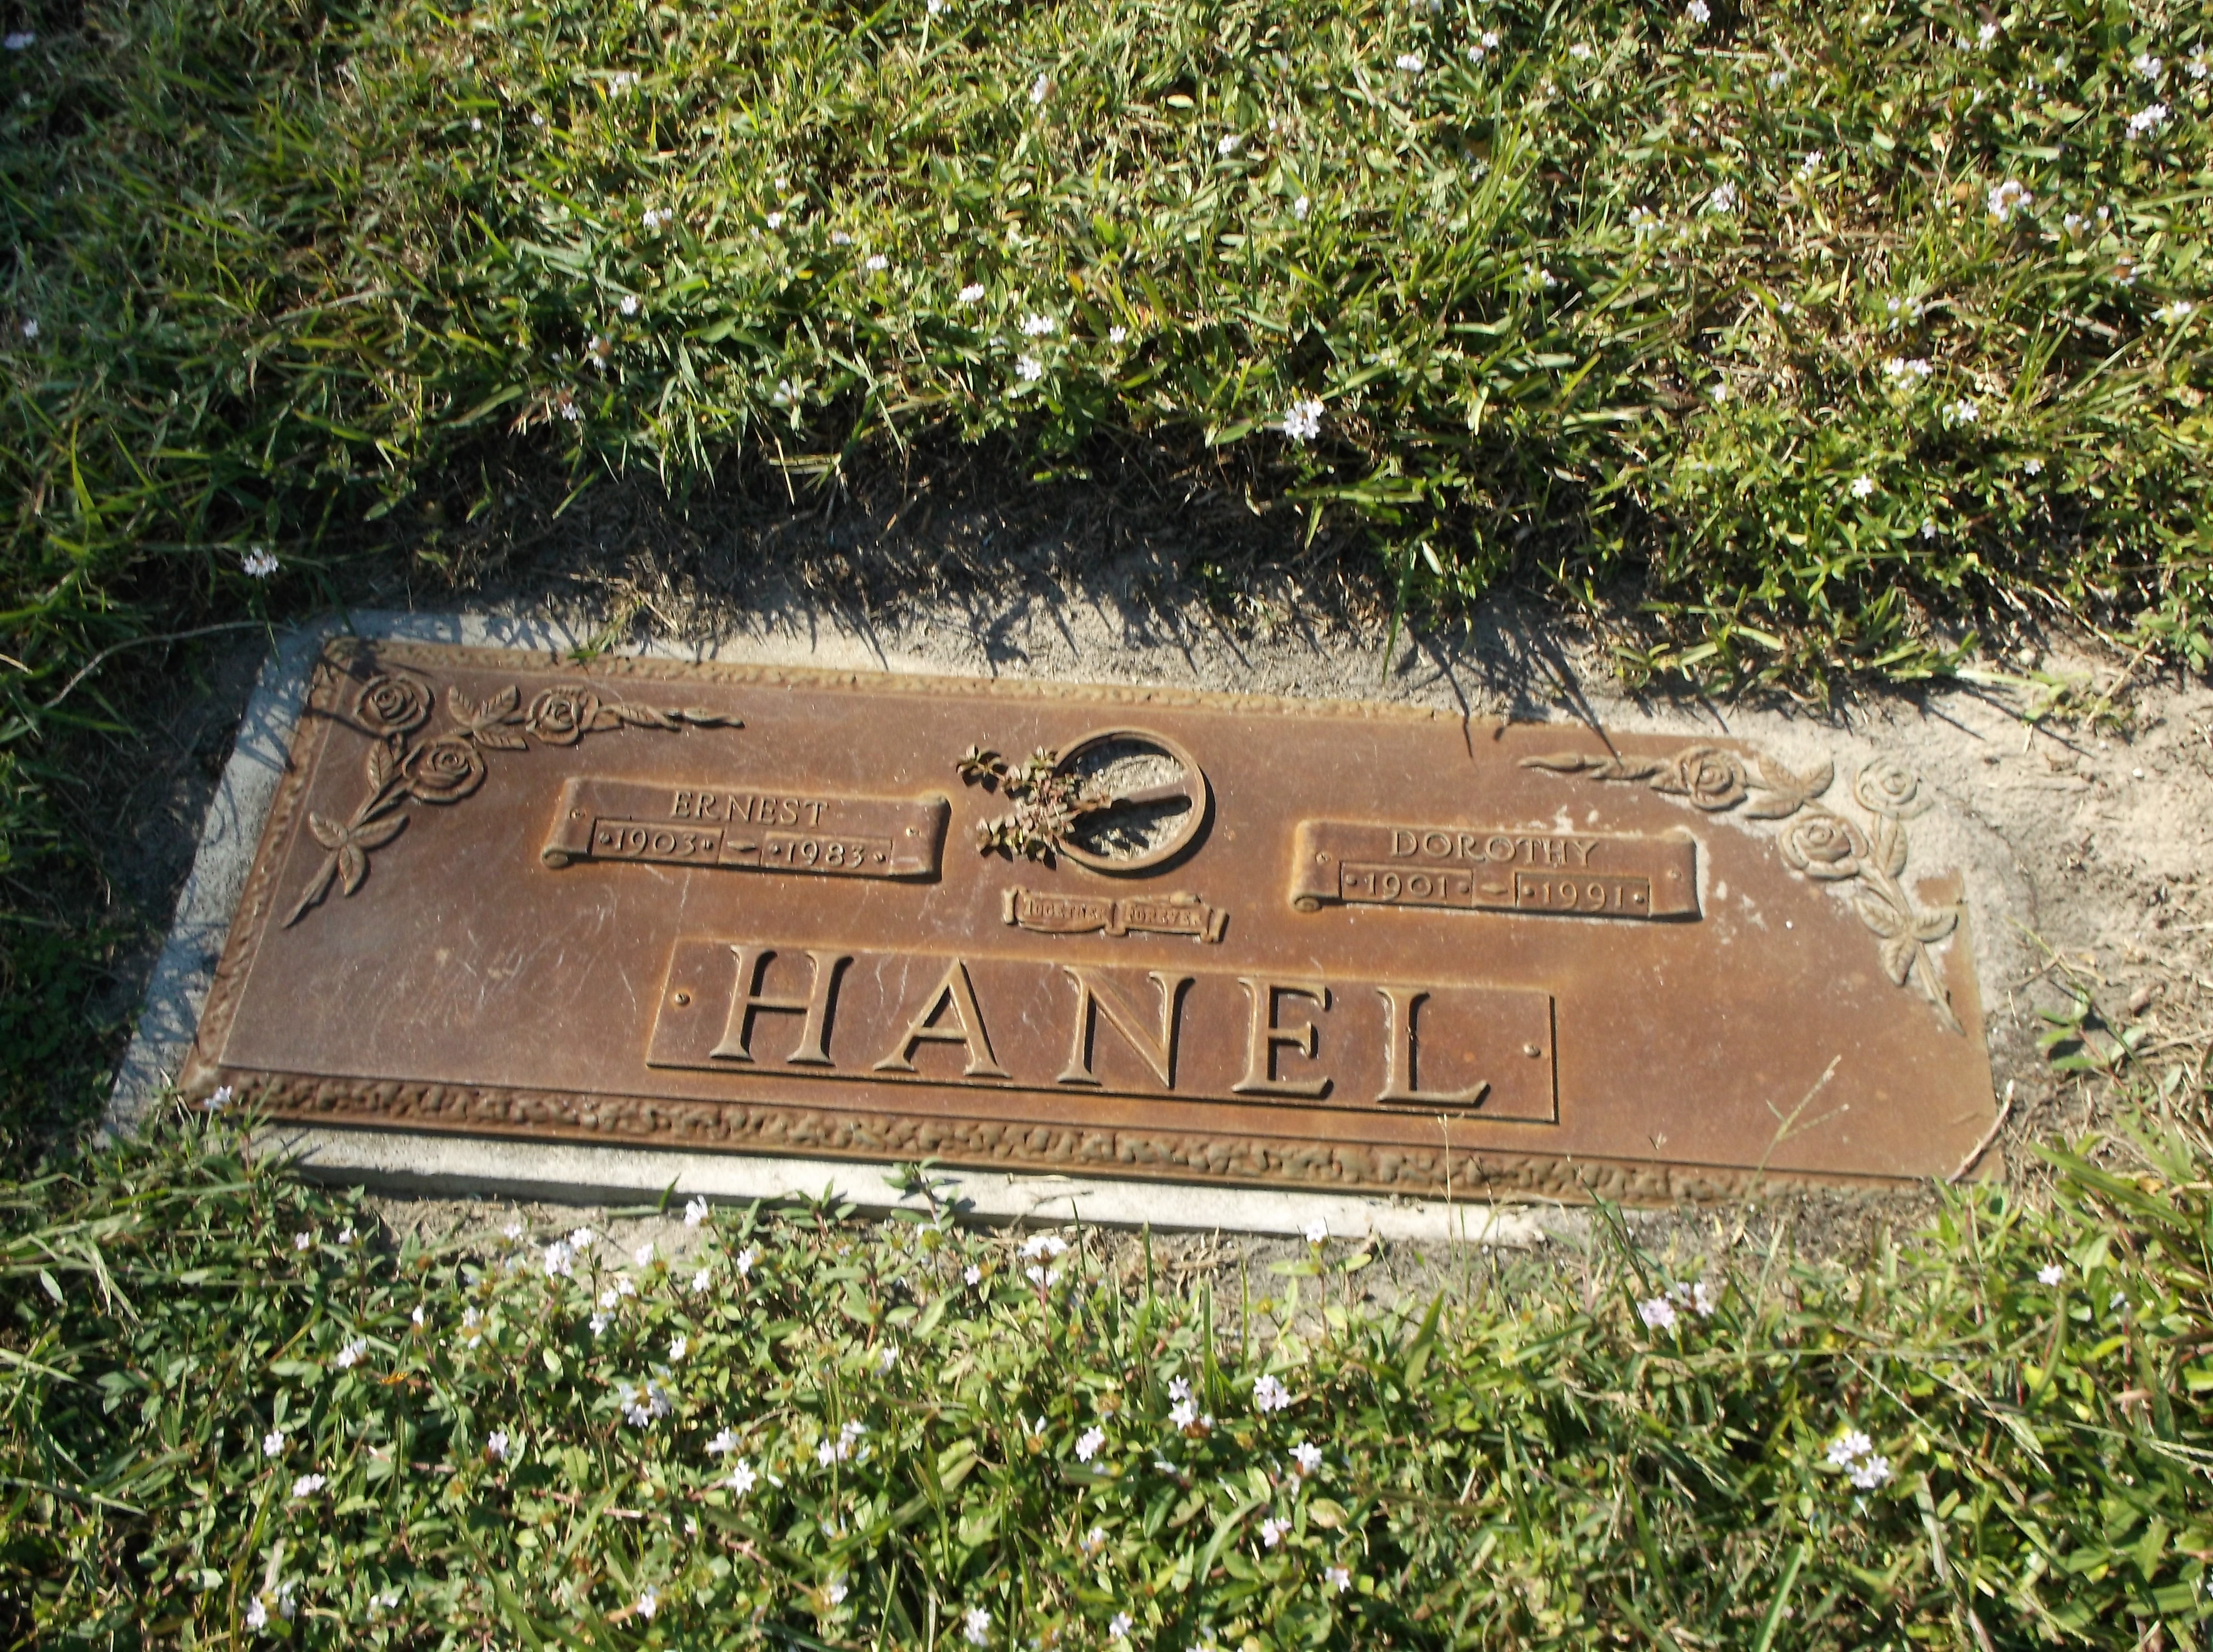 Ernest Hanel